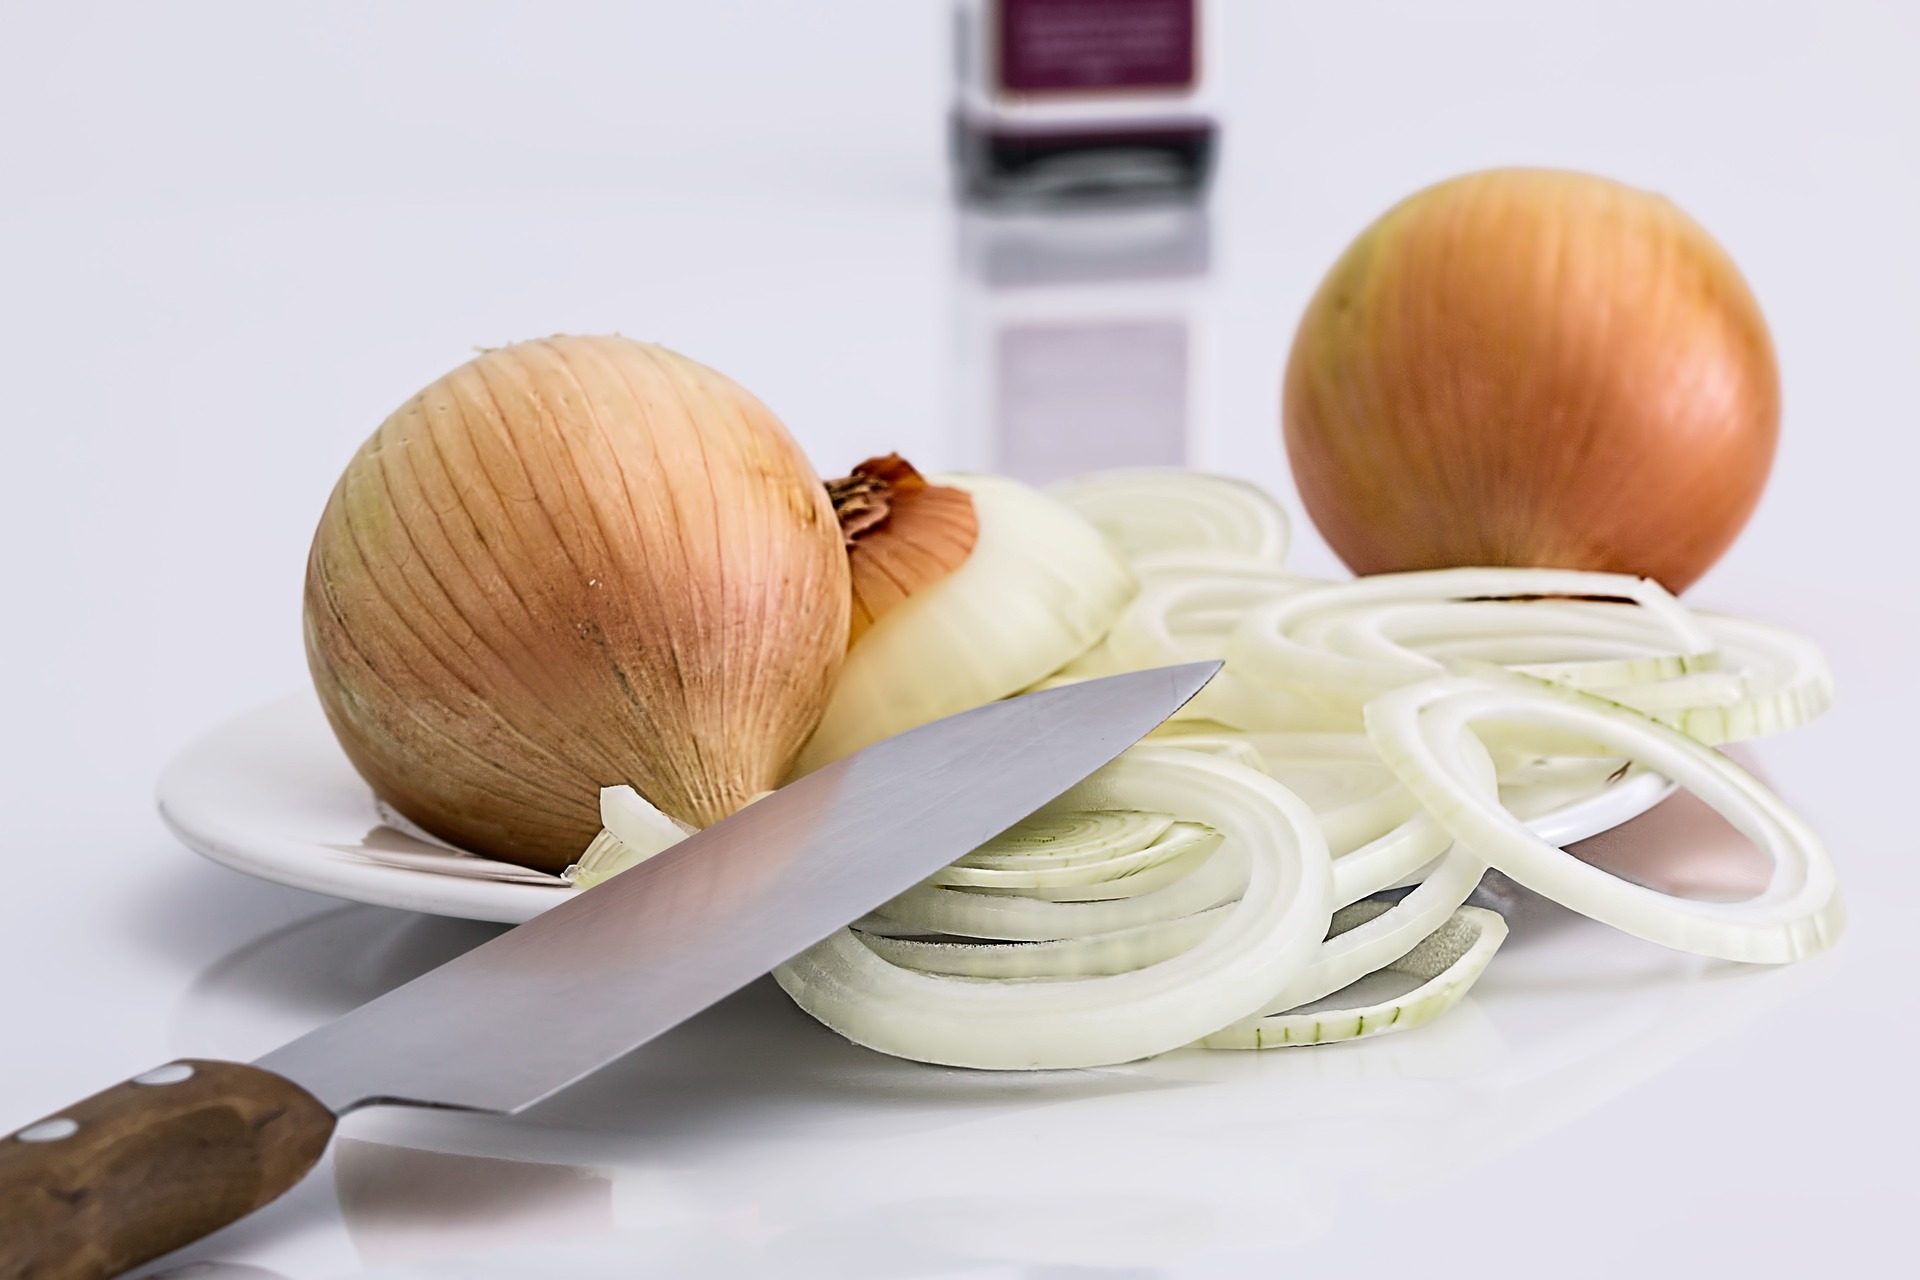 https://pixabay.com/en/onion-slice-knife-food-ingredient-647525/